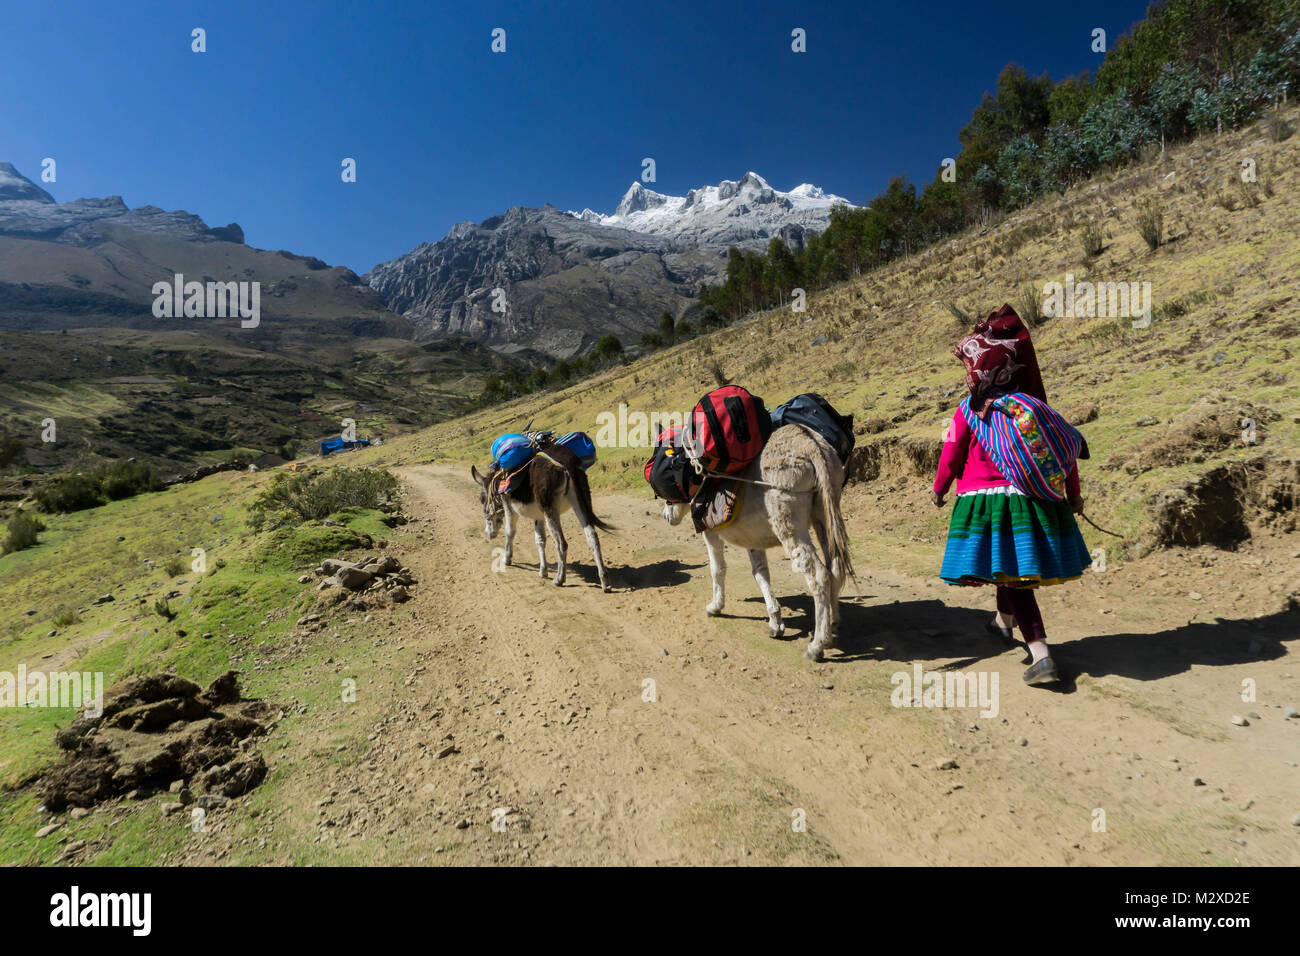 Les femmes autochtones porter et donkey driver transportant du matériel pour l'ascension de l'expédition dans les Andes au Pérou Banque D'Images